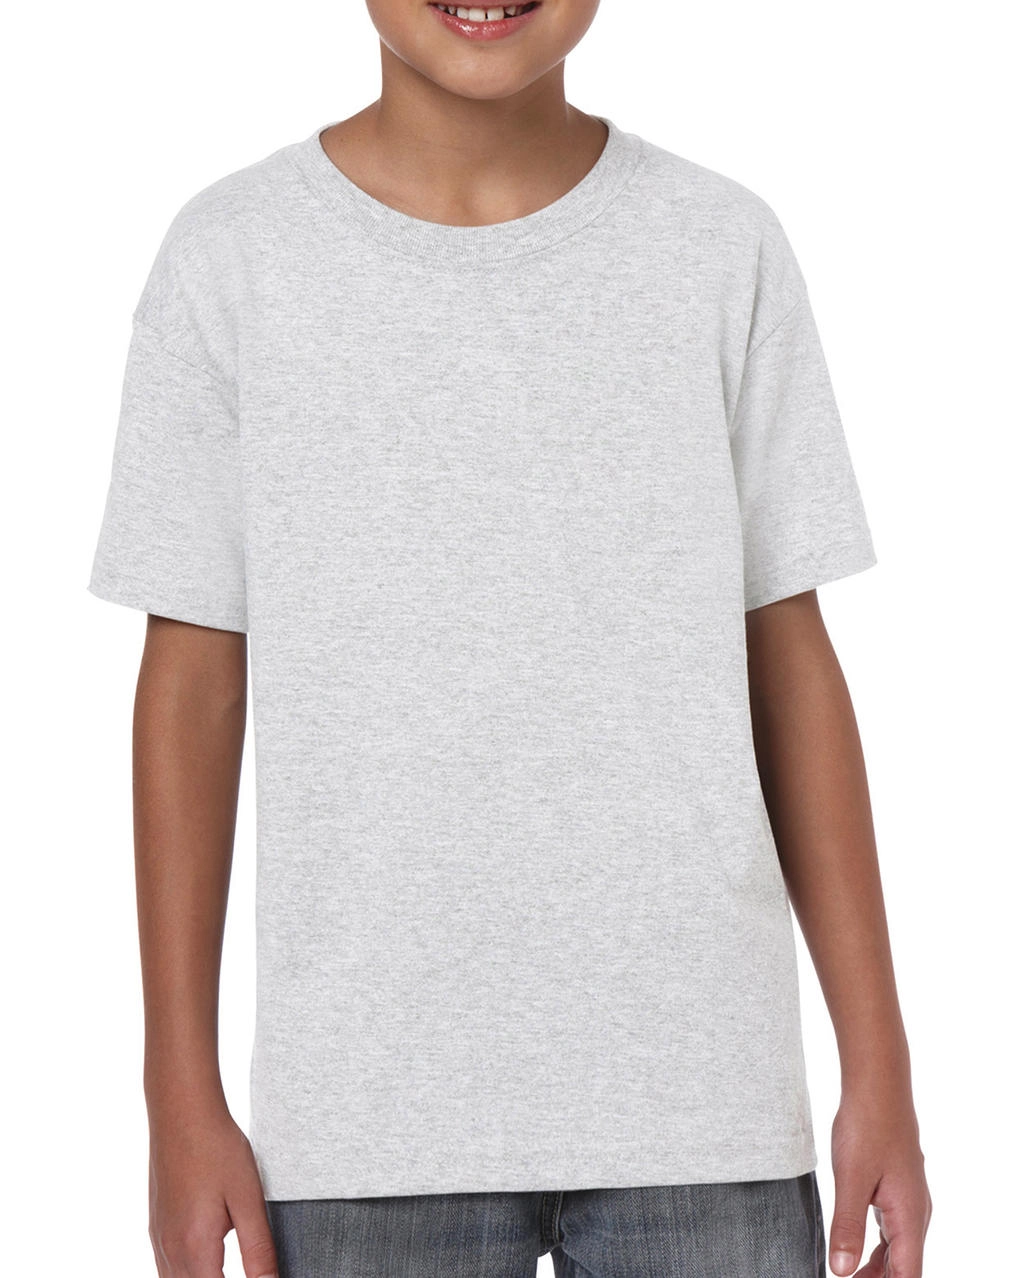 Heavy Cotton Youth T-Shirt zum Besticken und Bedrucken in der Farbe Ash Grey mit Ihren Logo, Schriftzug oder Motiv.